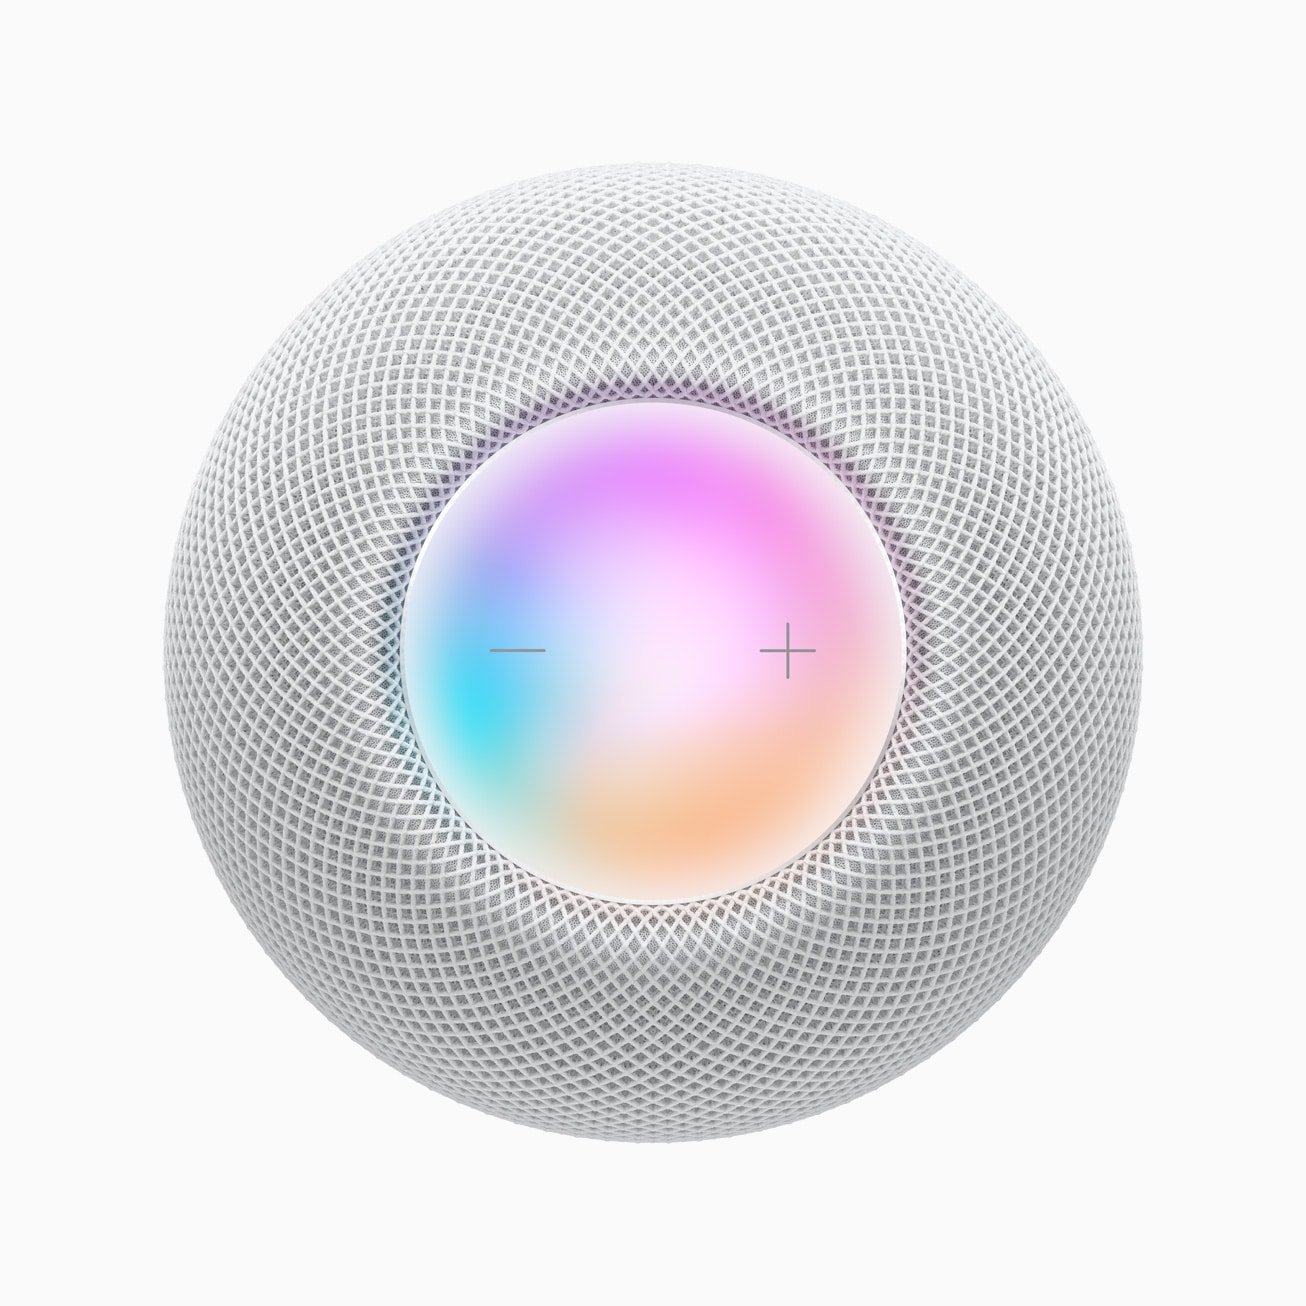 Apple contrata un nuevo software HomePod para impulsar sus esfuerzos de altavoces inteligentes